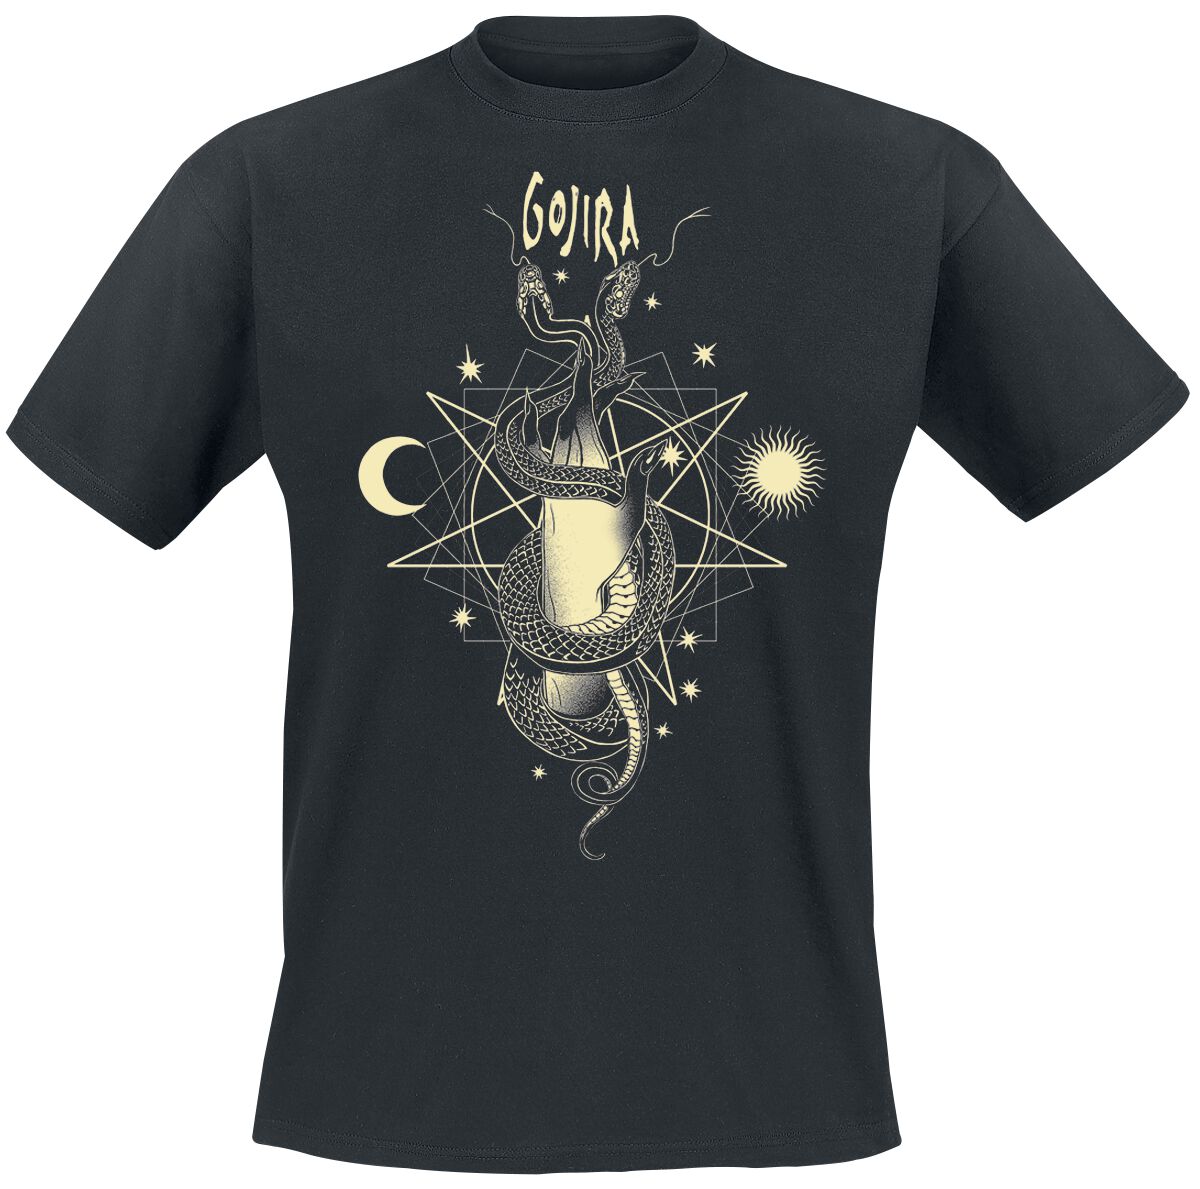 Gojira T-Shirt - Celestial Snakes - S bis XXL - für Männer - Größe XXL - schwarz  - Lizenziertes Merchandise!